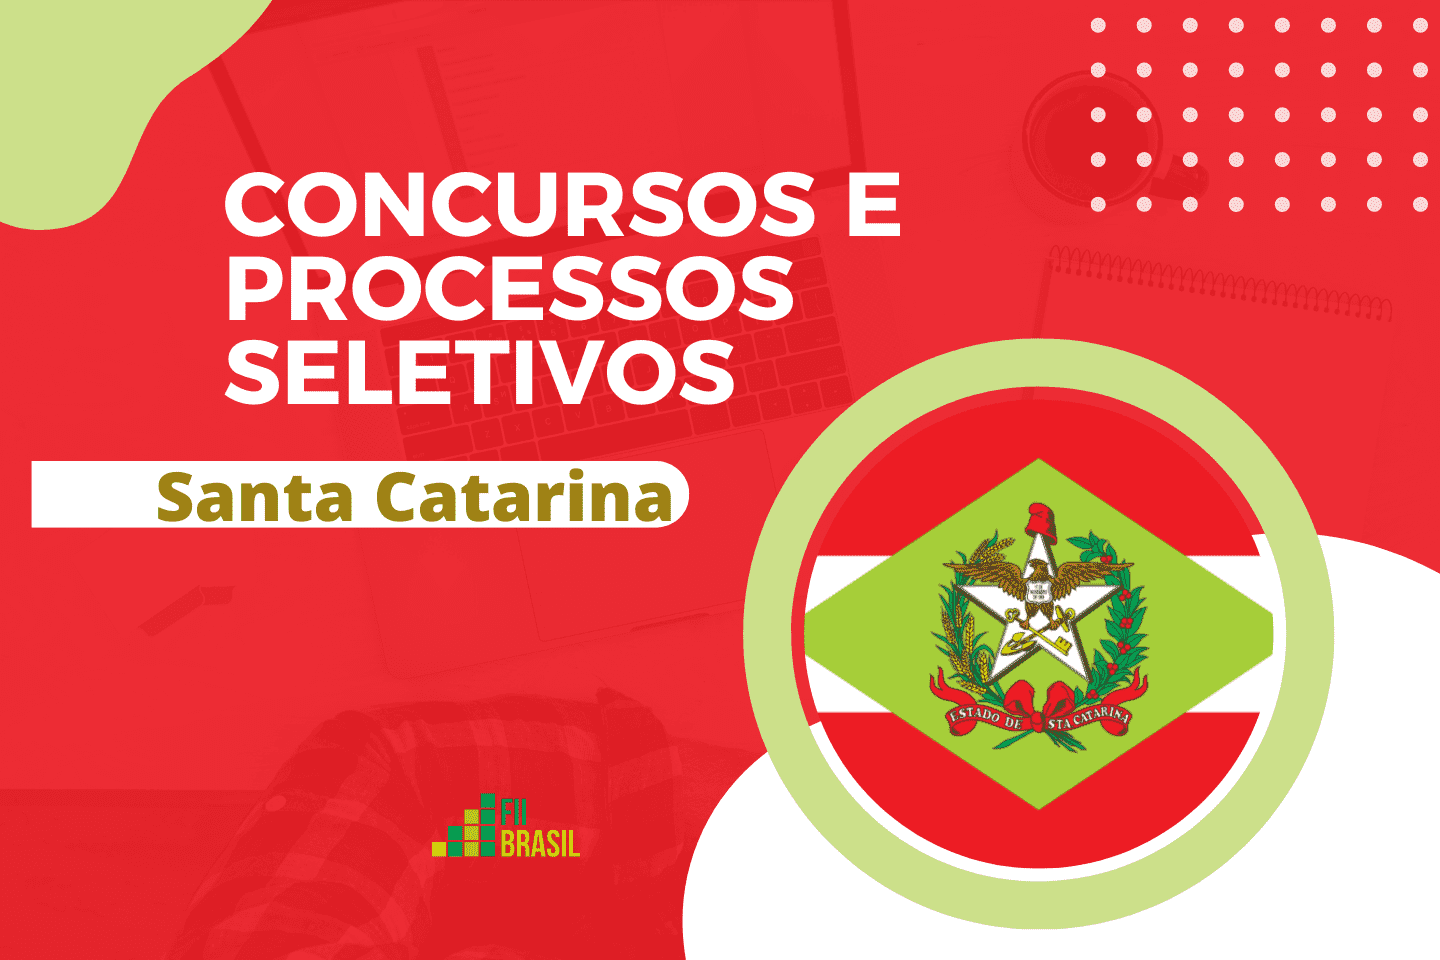 TJ - SC Santa Catarina concurso